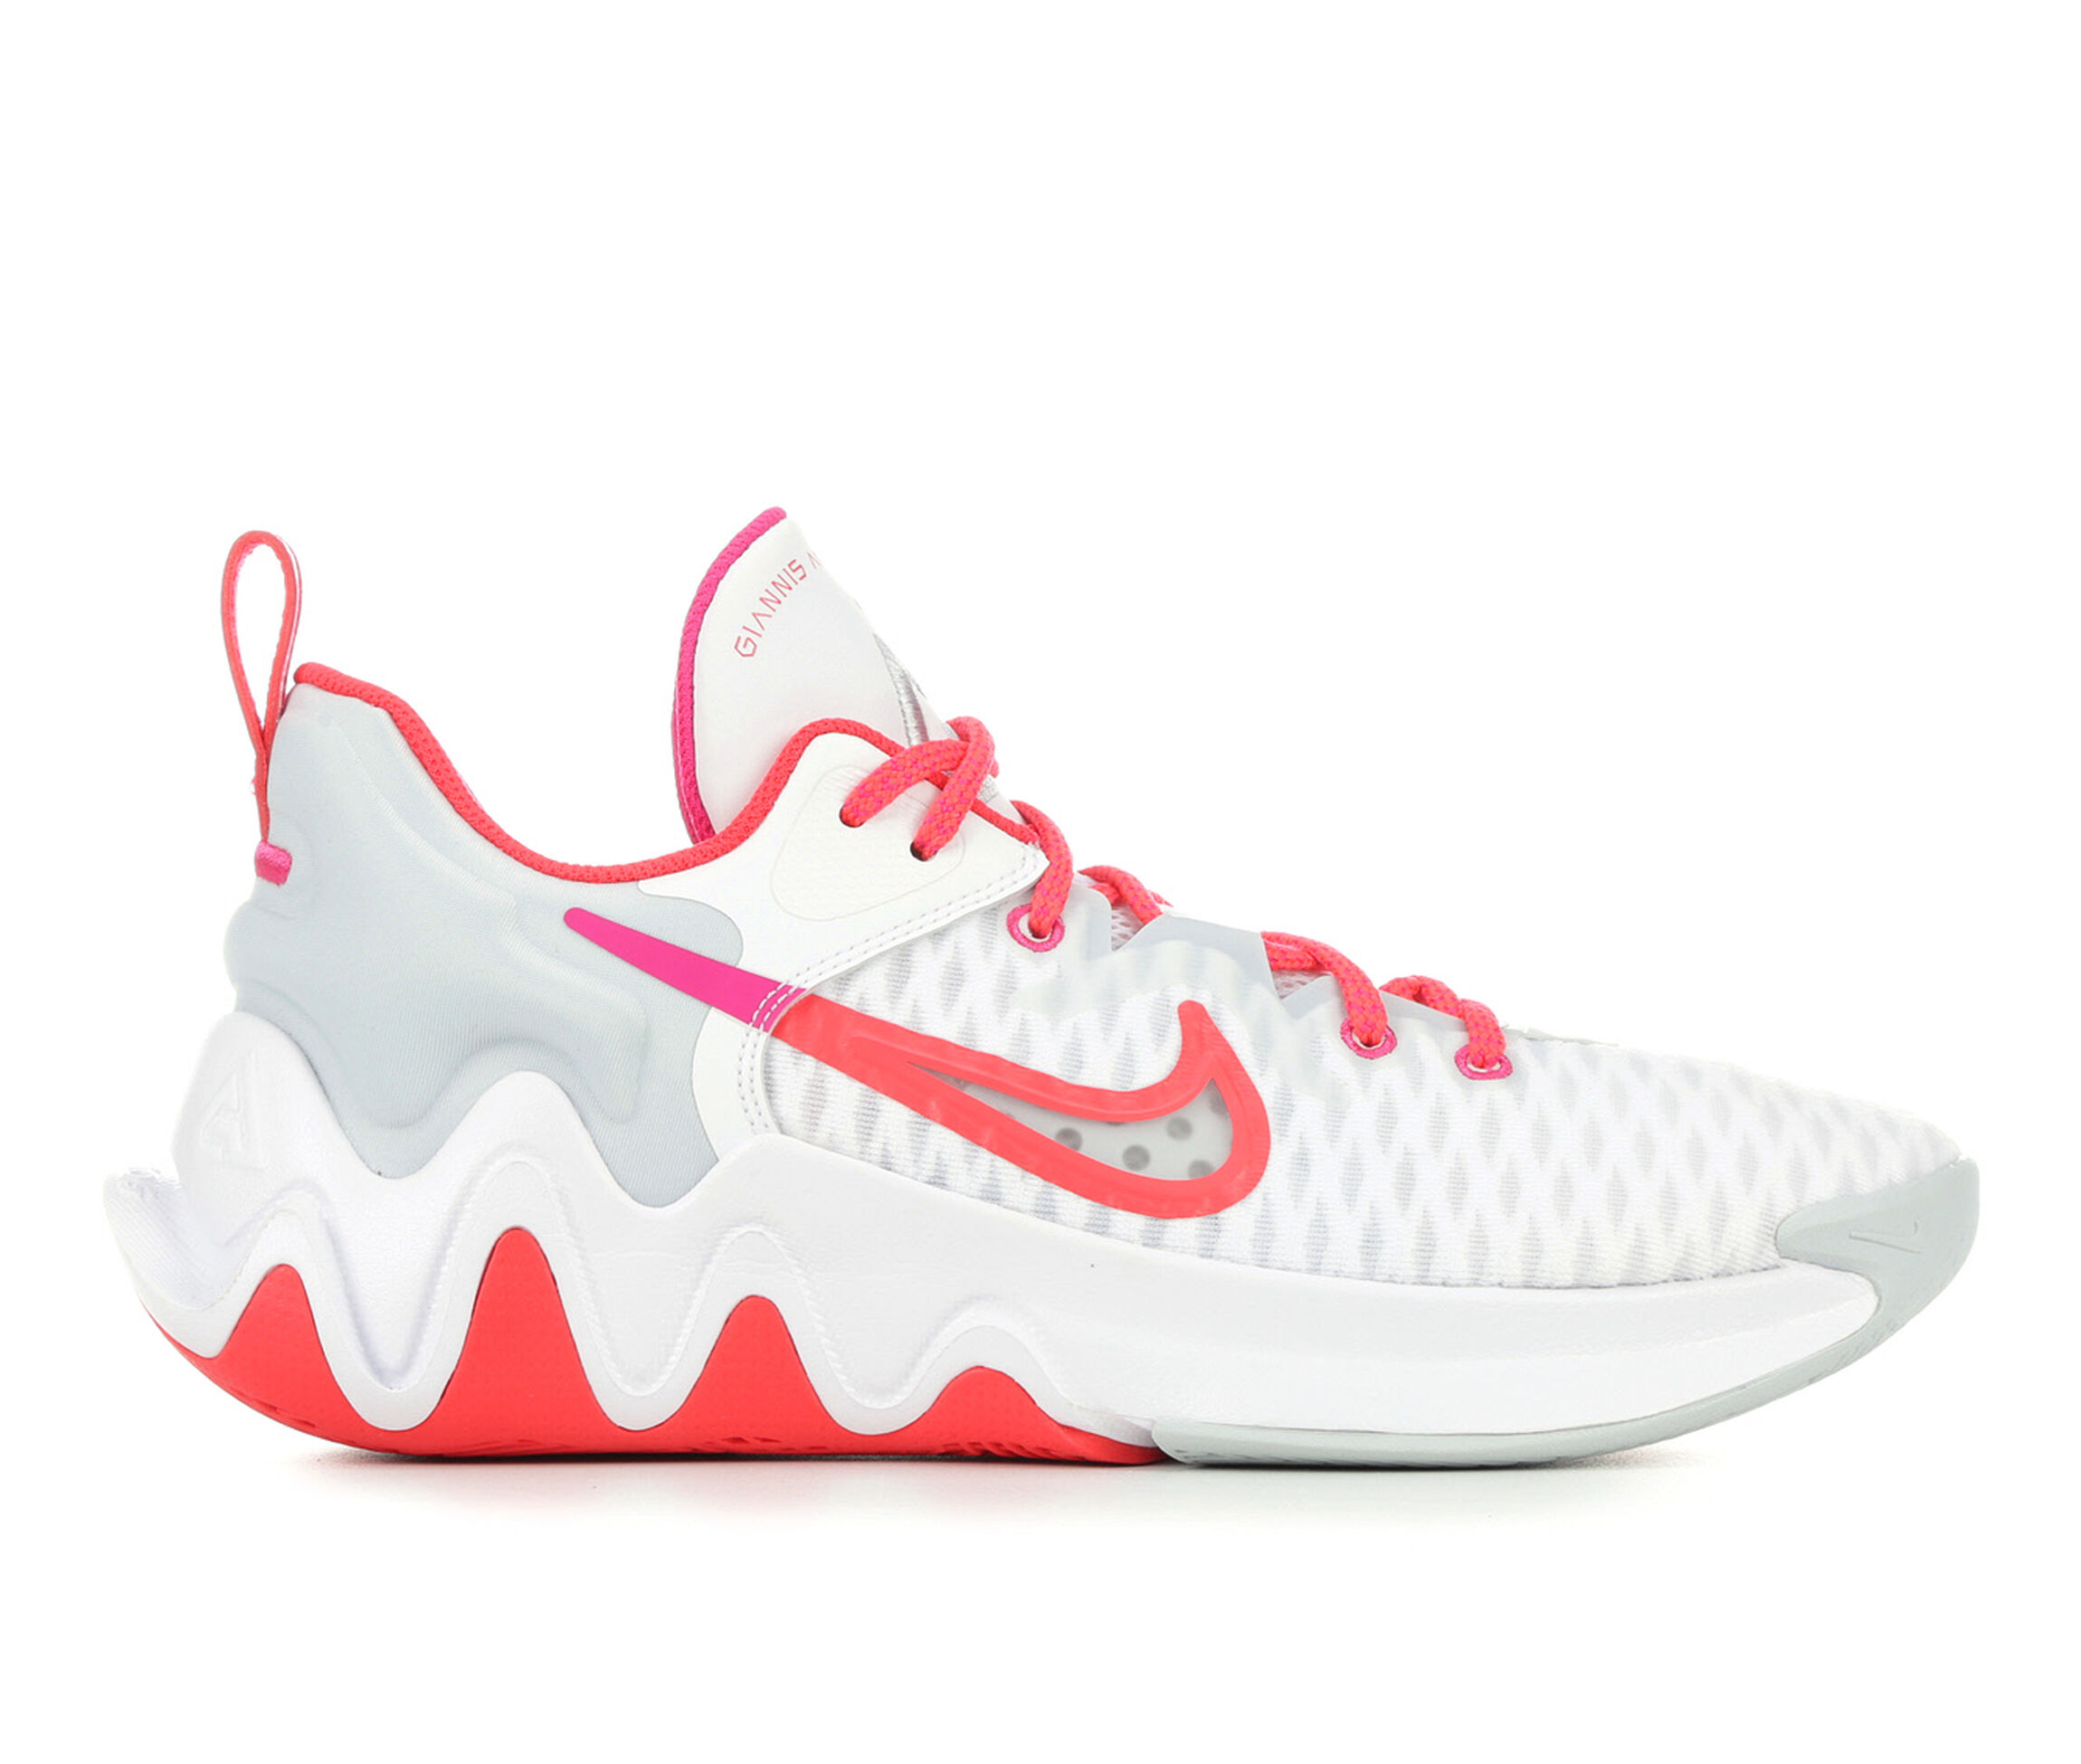 Nike Basketball Shoes | Shoe Carnival